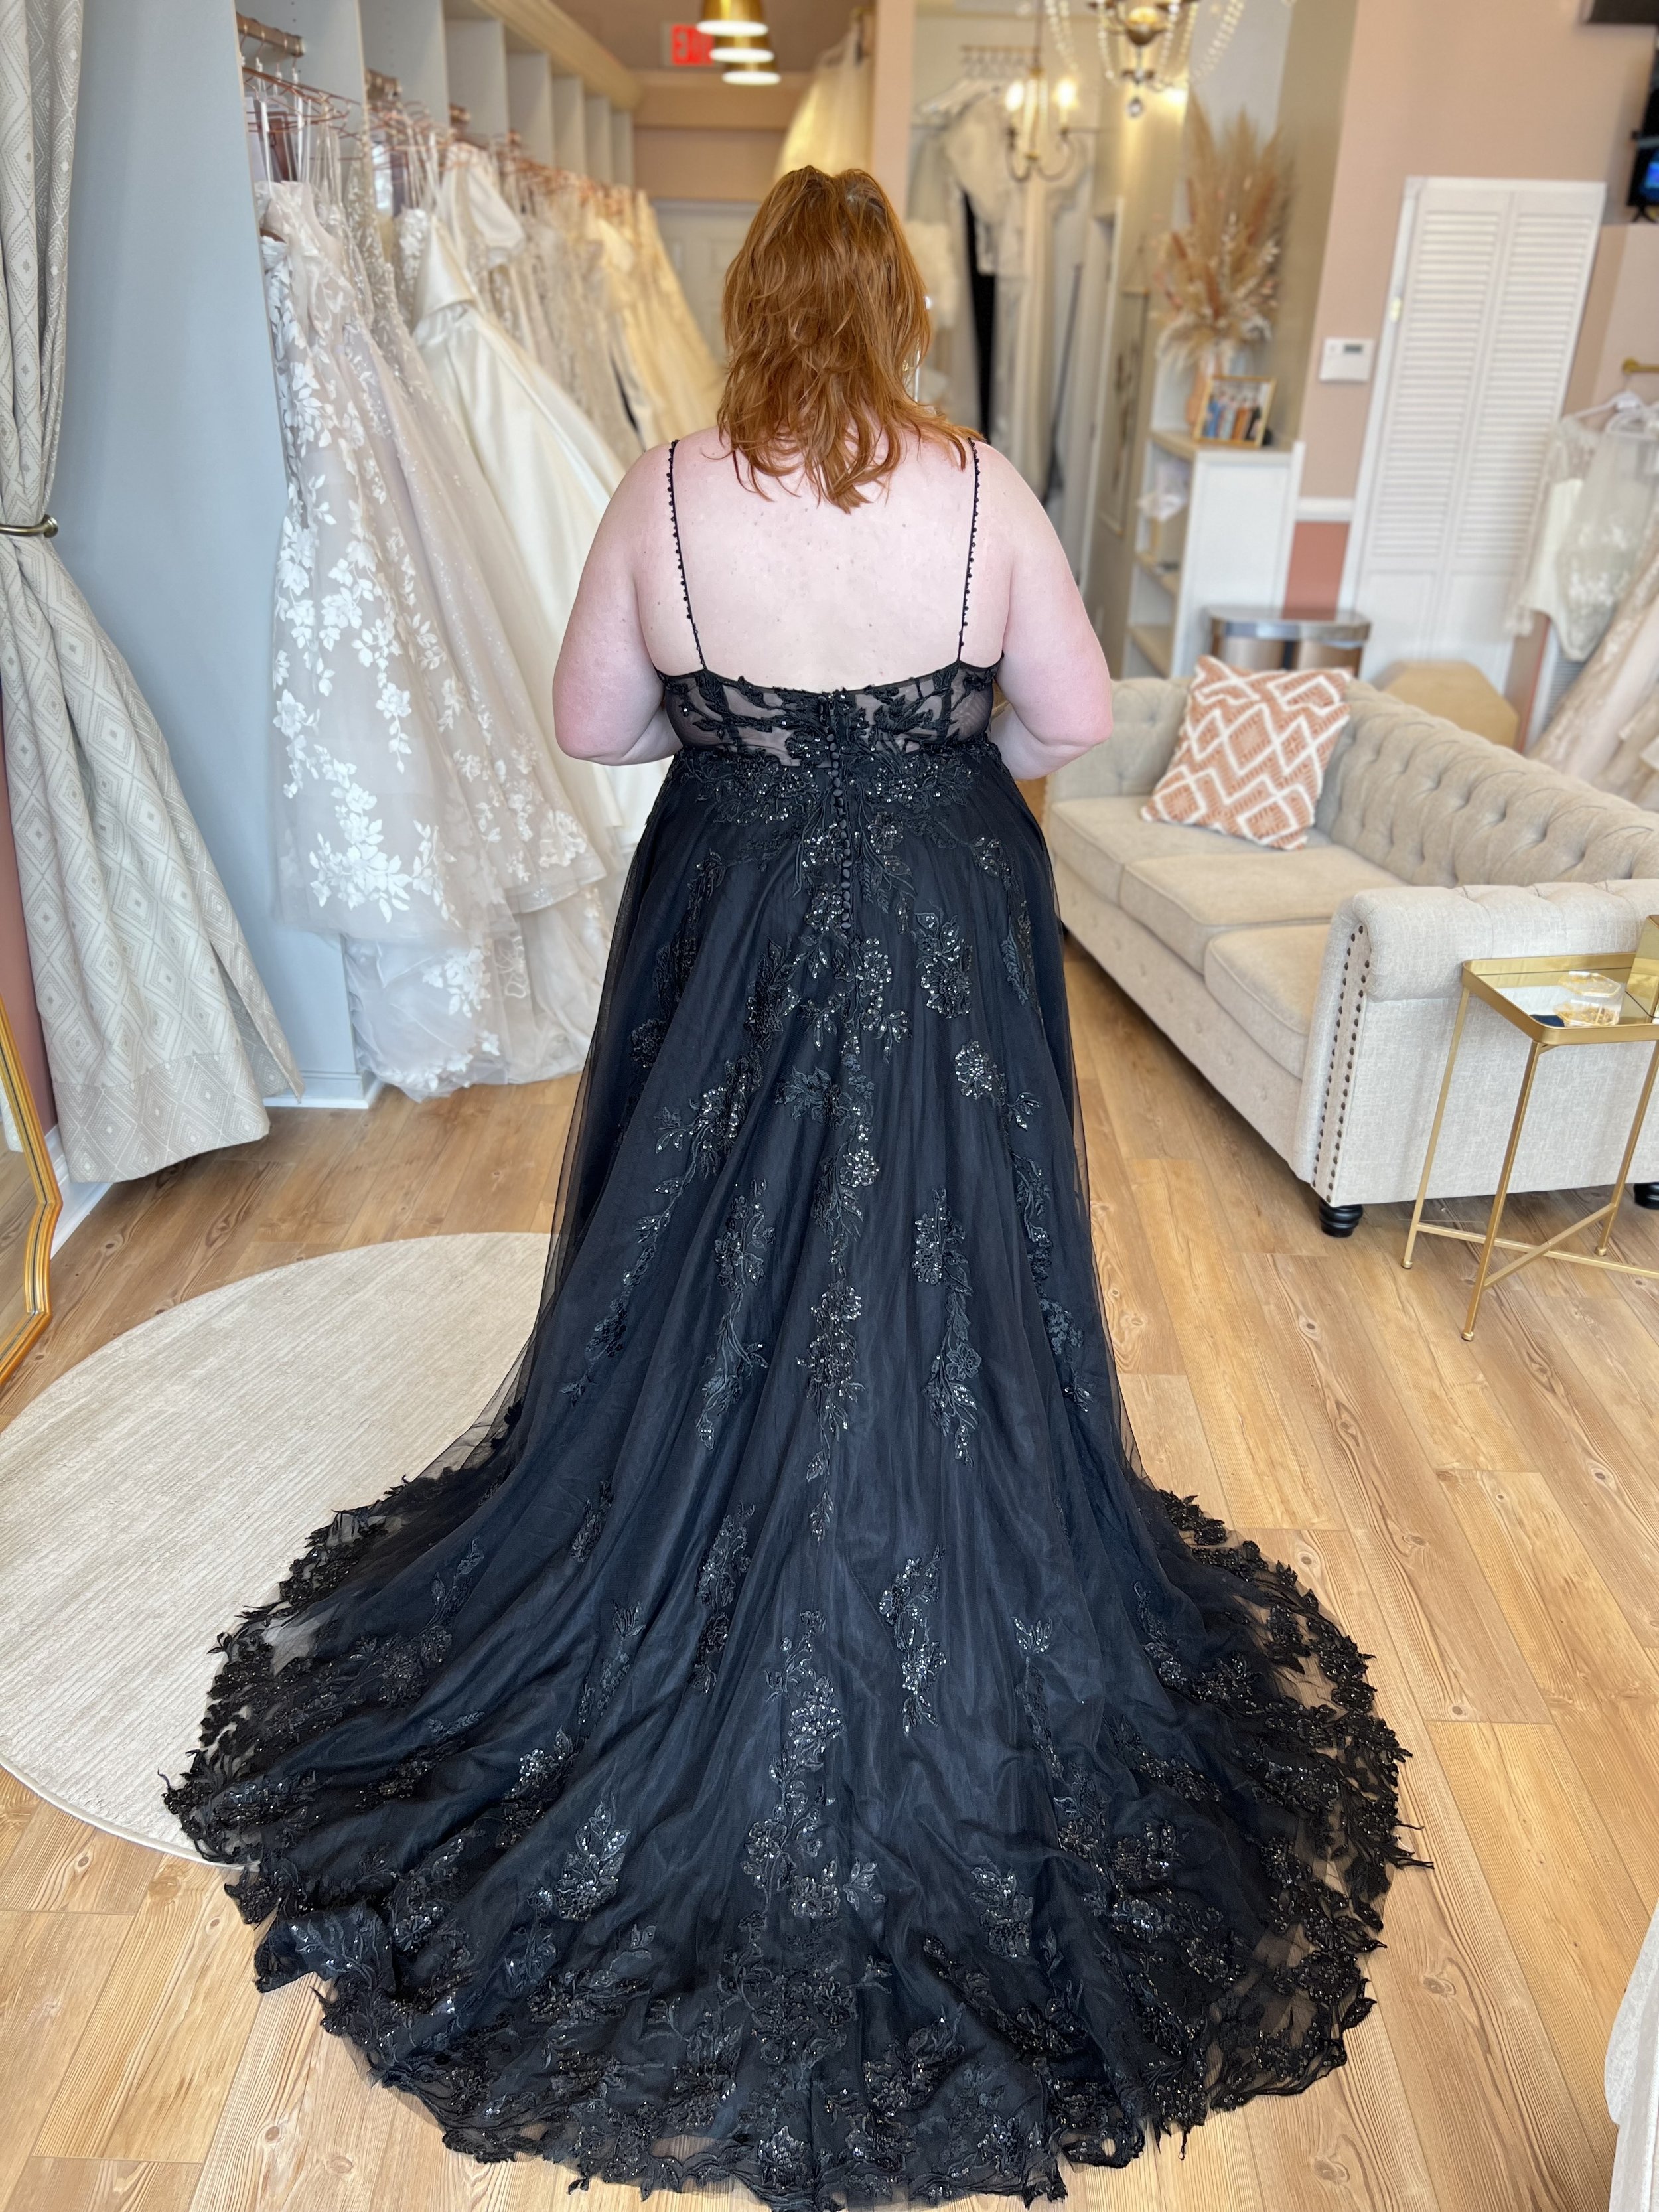 See Kourtney Kardashian's Black Wedding Dress From Reception